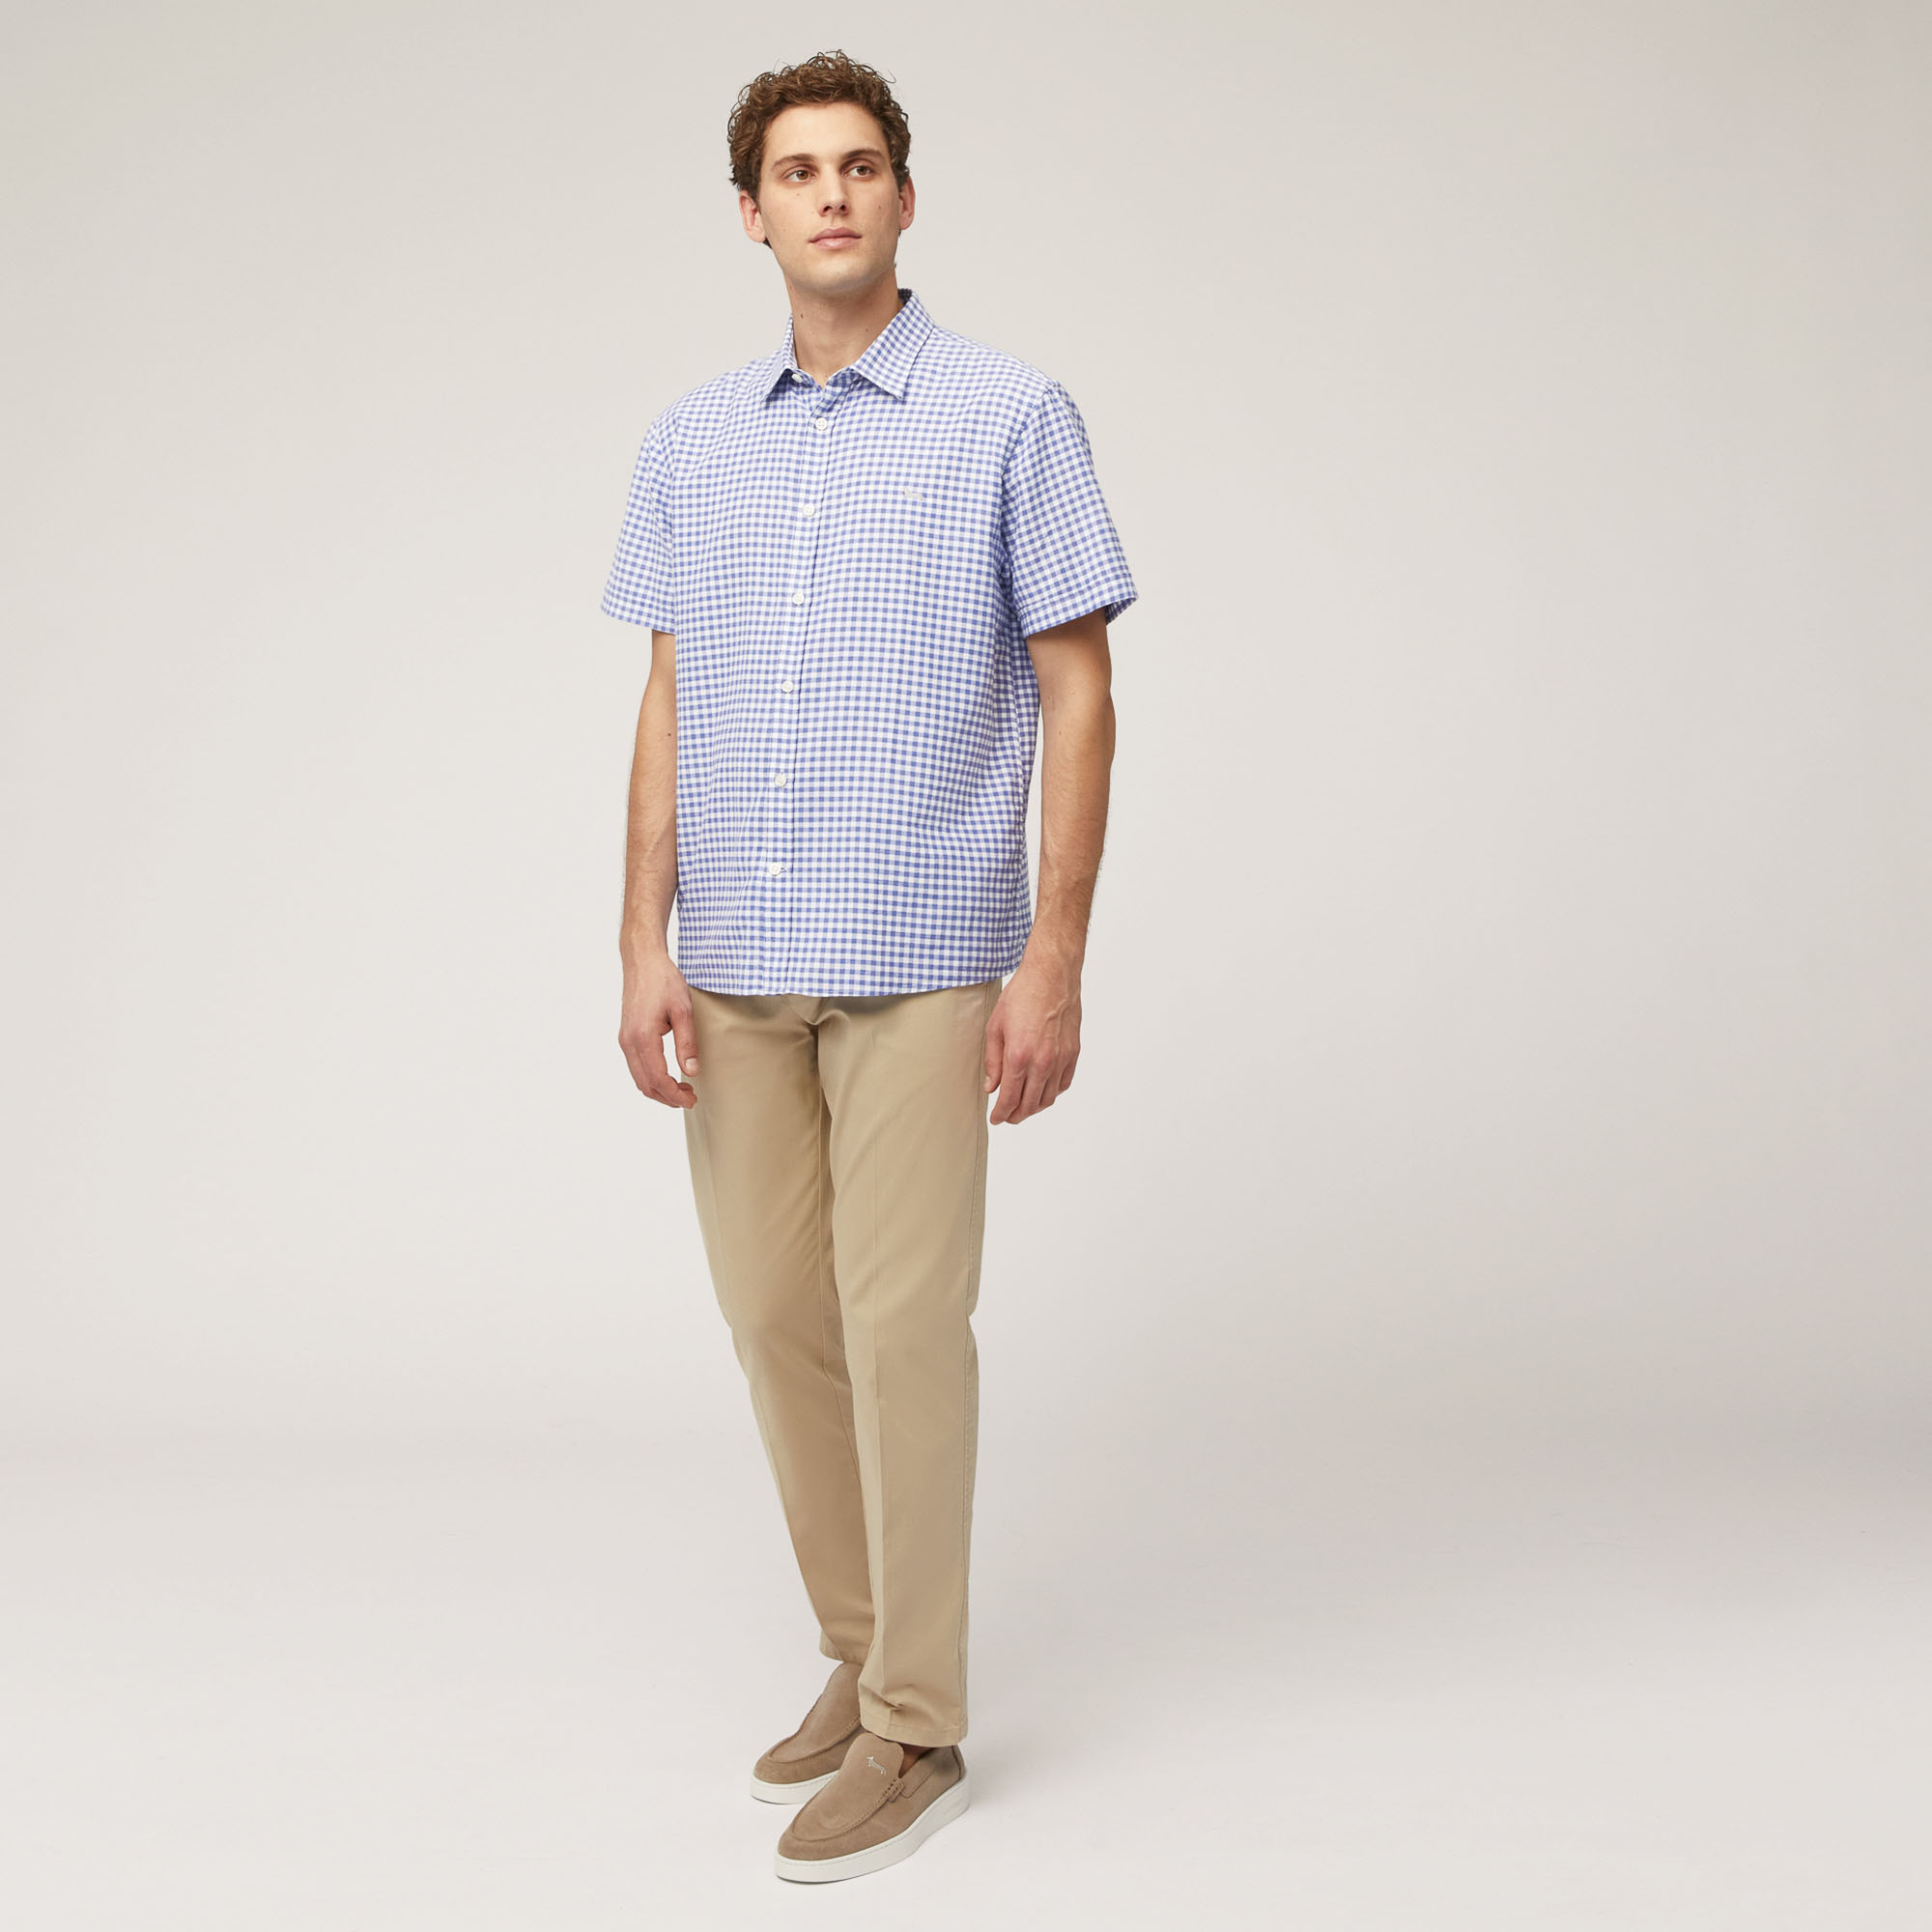 Kariertes Hemd aus Baumwollkettengewirk mit kurzen Ärmeln, Blau, large image number 3